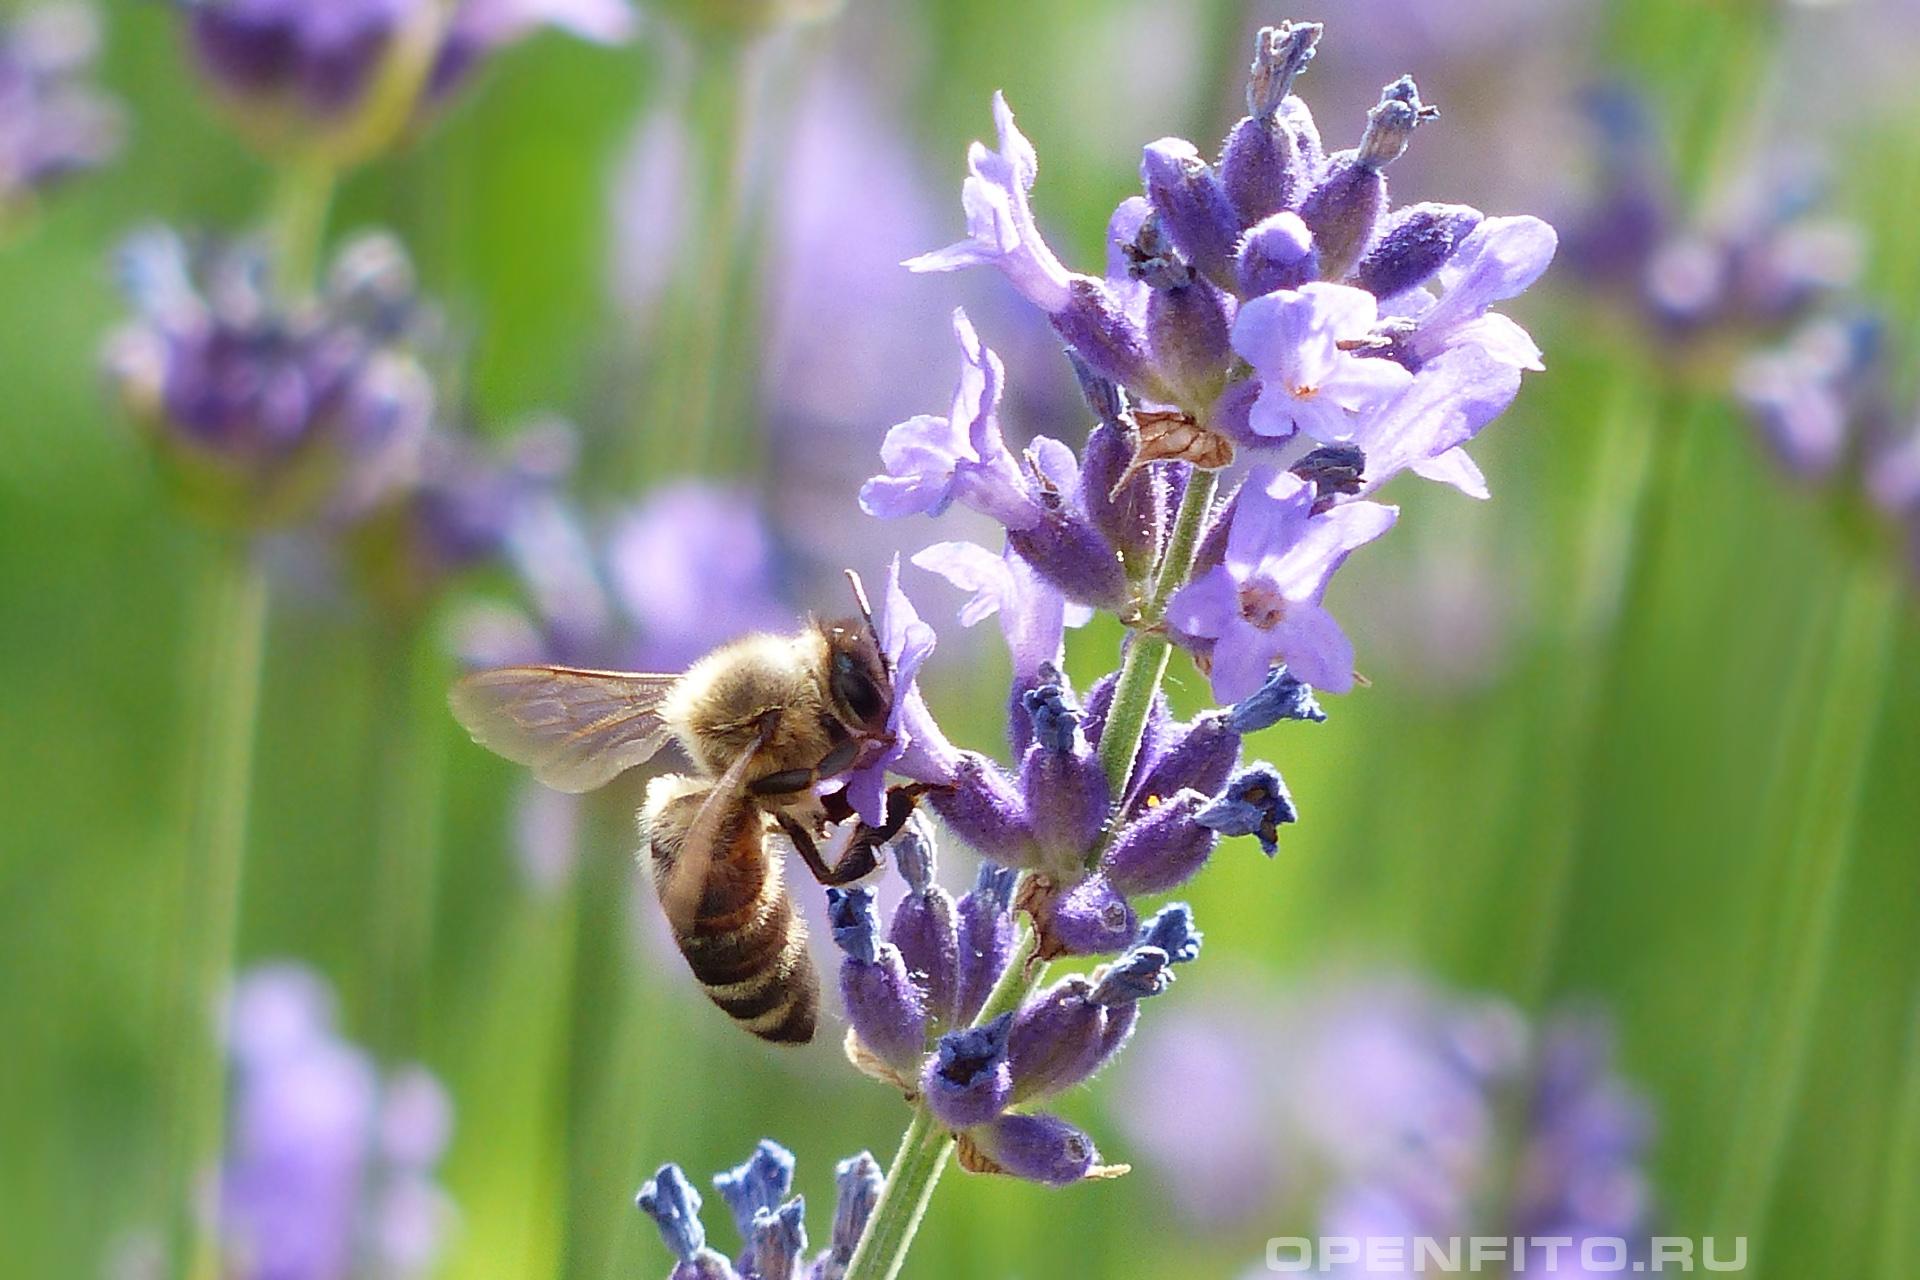 Пчела собирает нектар с цветков лаванды